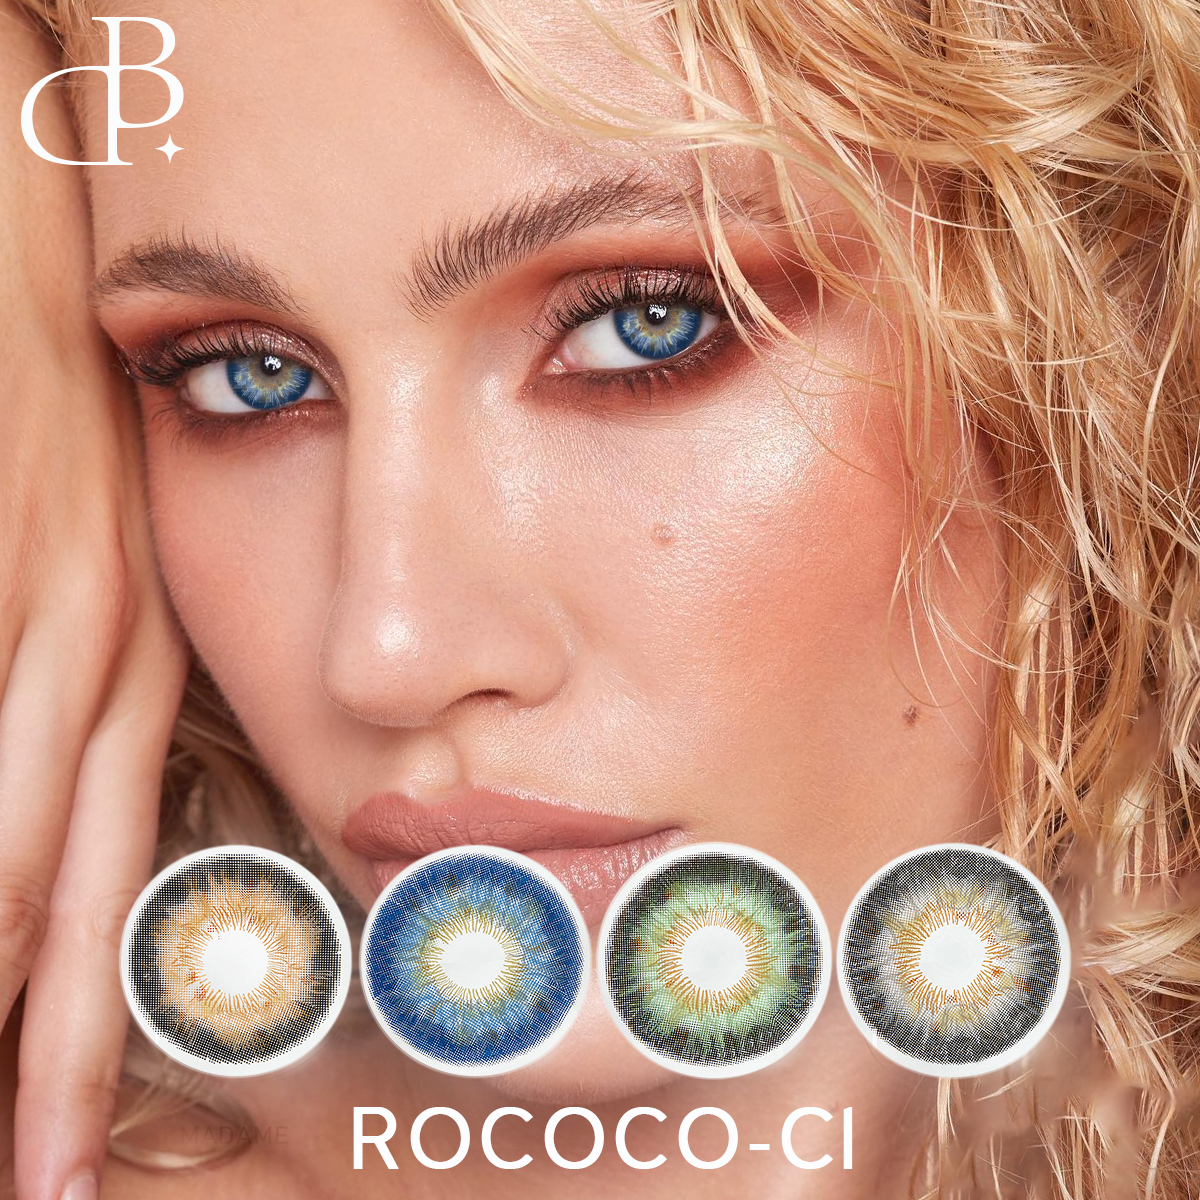 Μαλακοί έγχρωμοι φακοί επαφής 3 Tone ROCOCO-1 14,2 mm Small Eyes Προσαρμογή ετήσιων φακών πράσινων ματιών